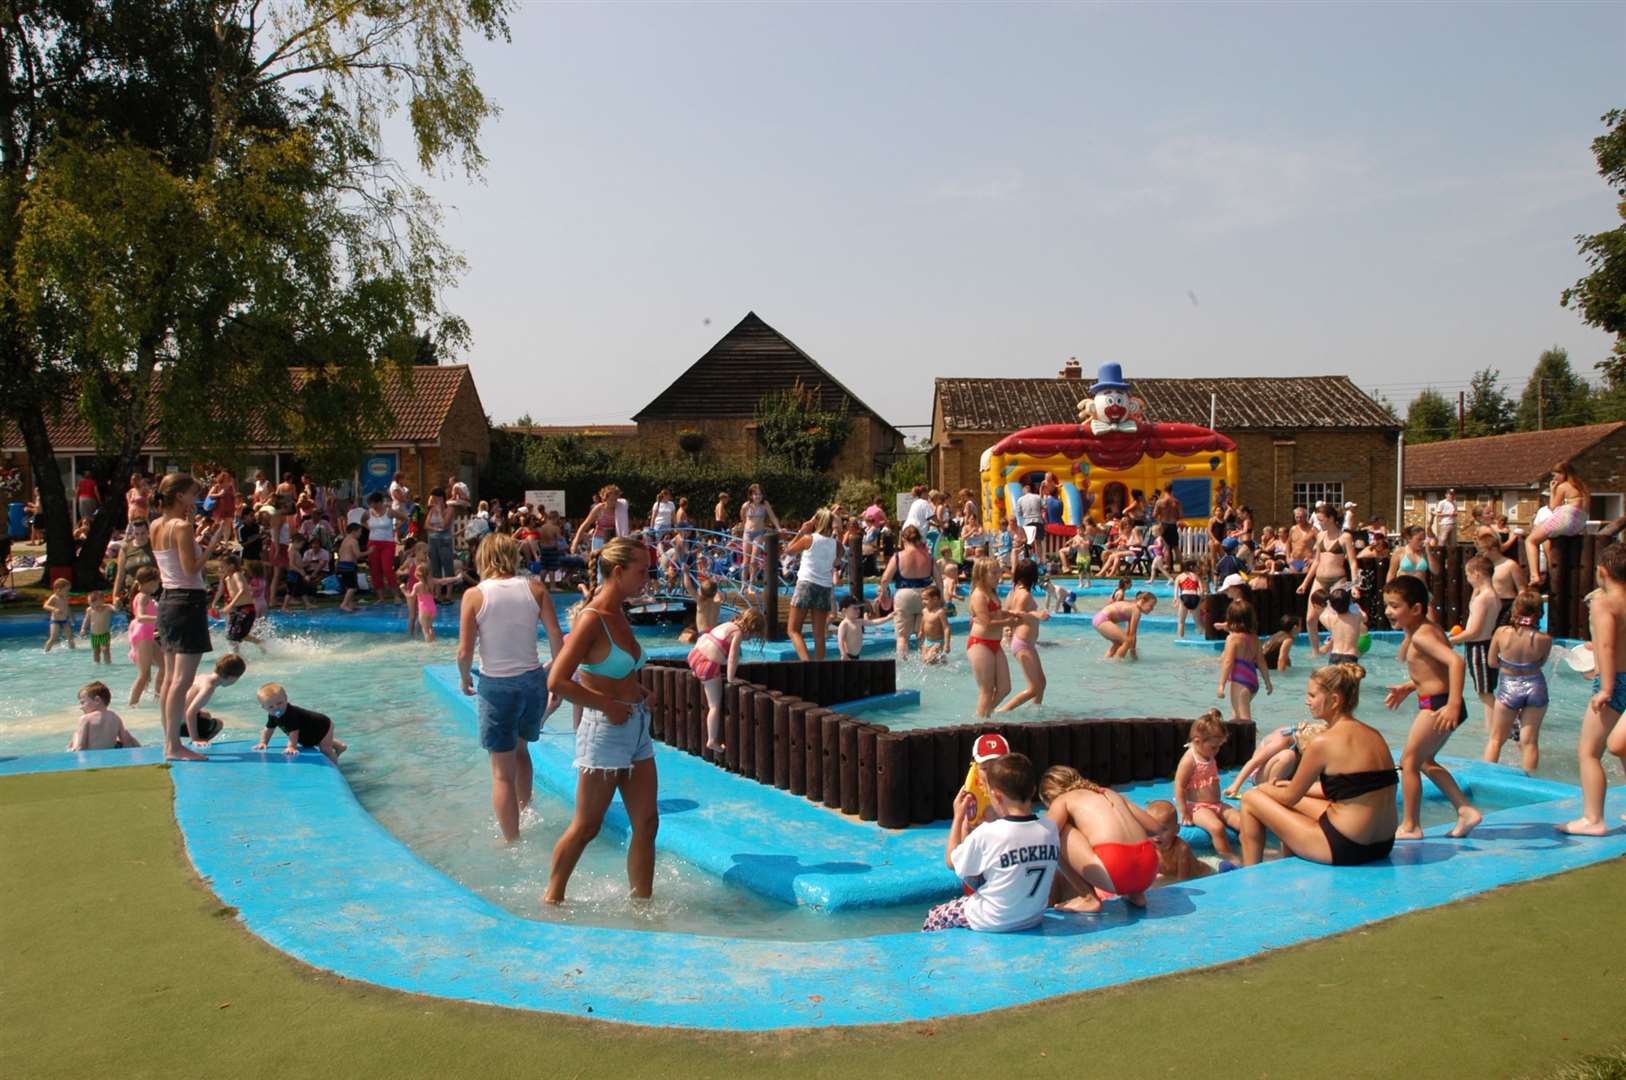 Swanley Park pool